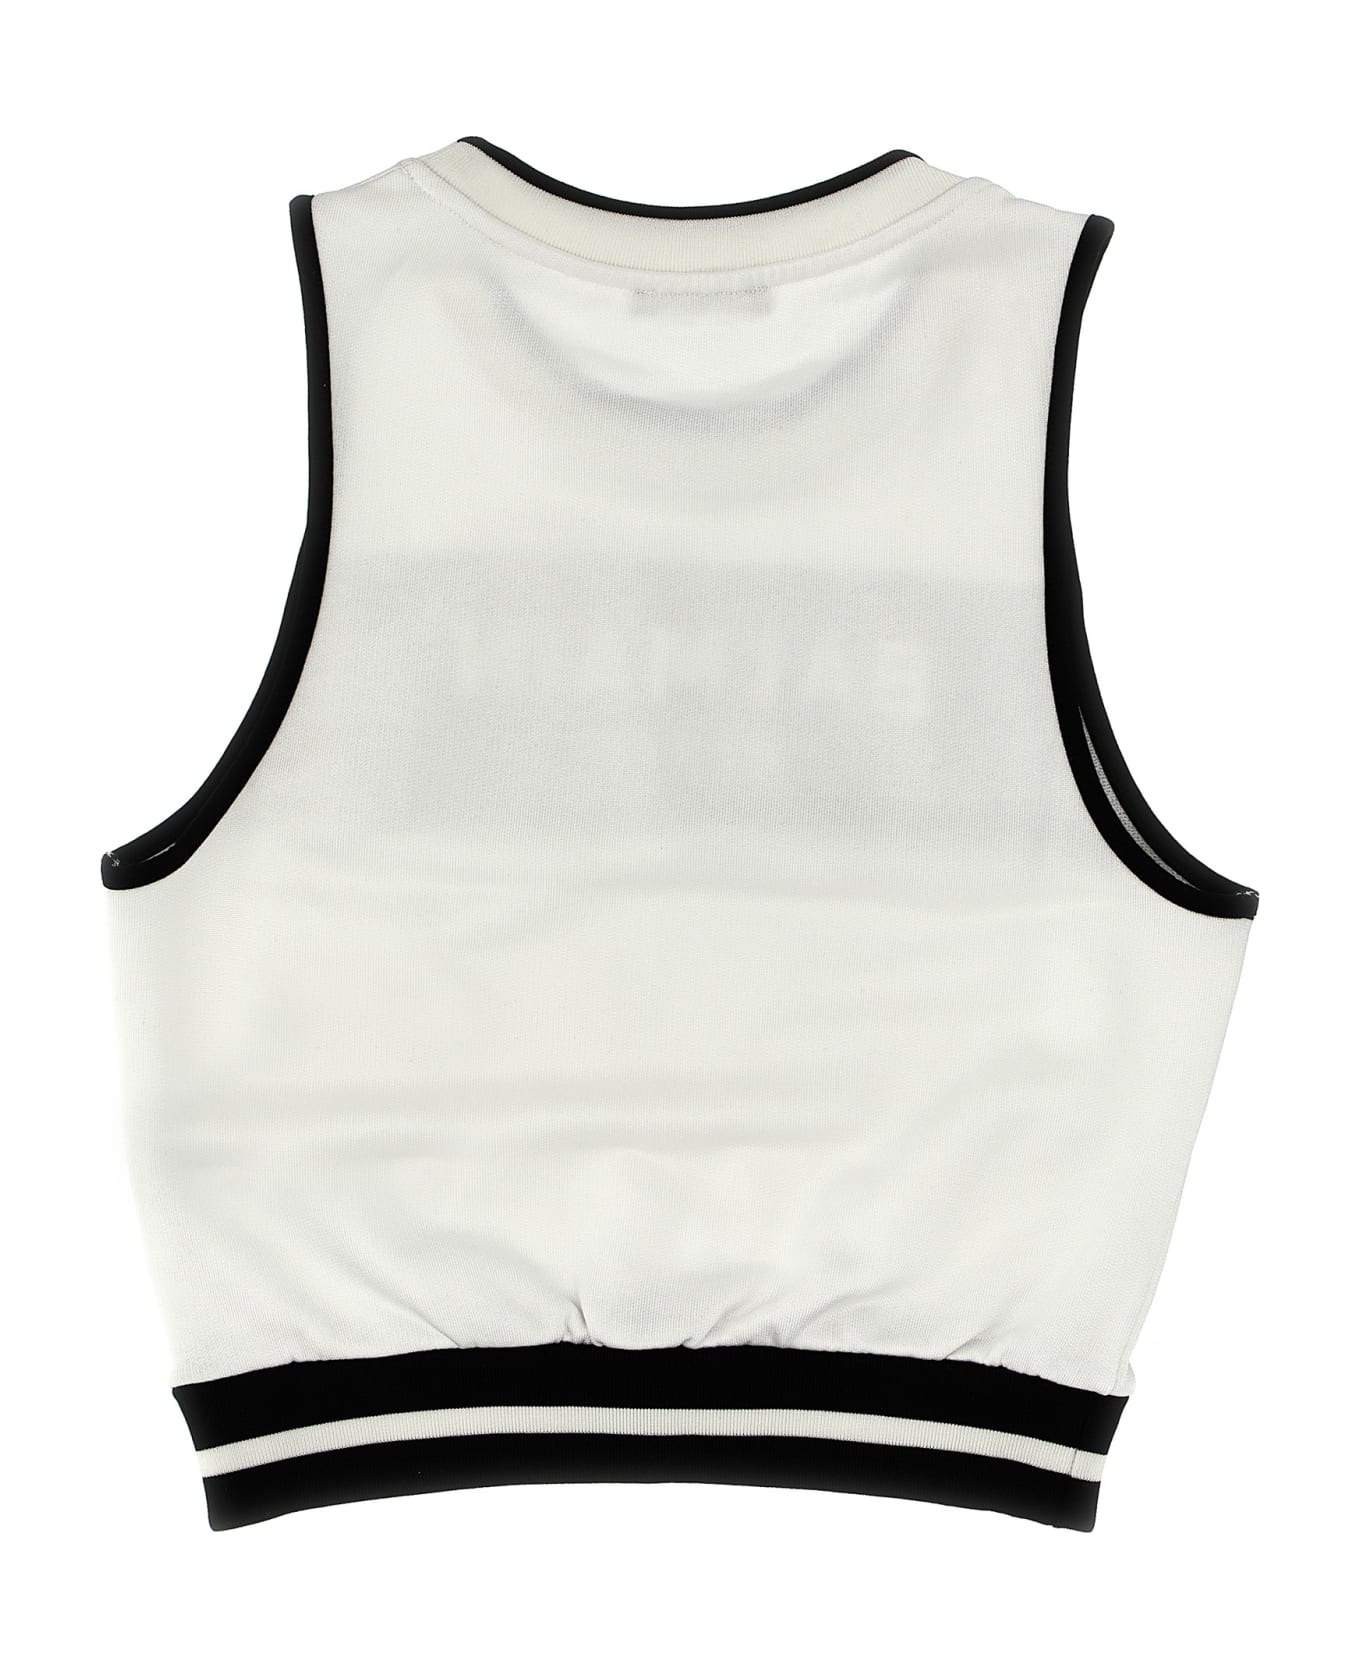 Balmain tknm Logo Tank Top - White/black